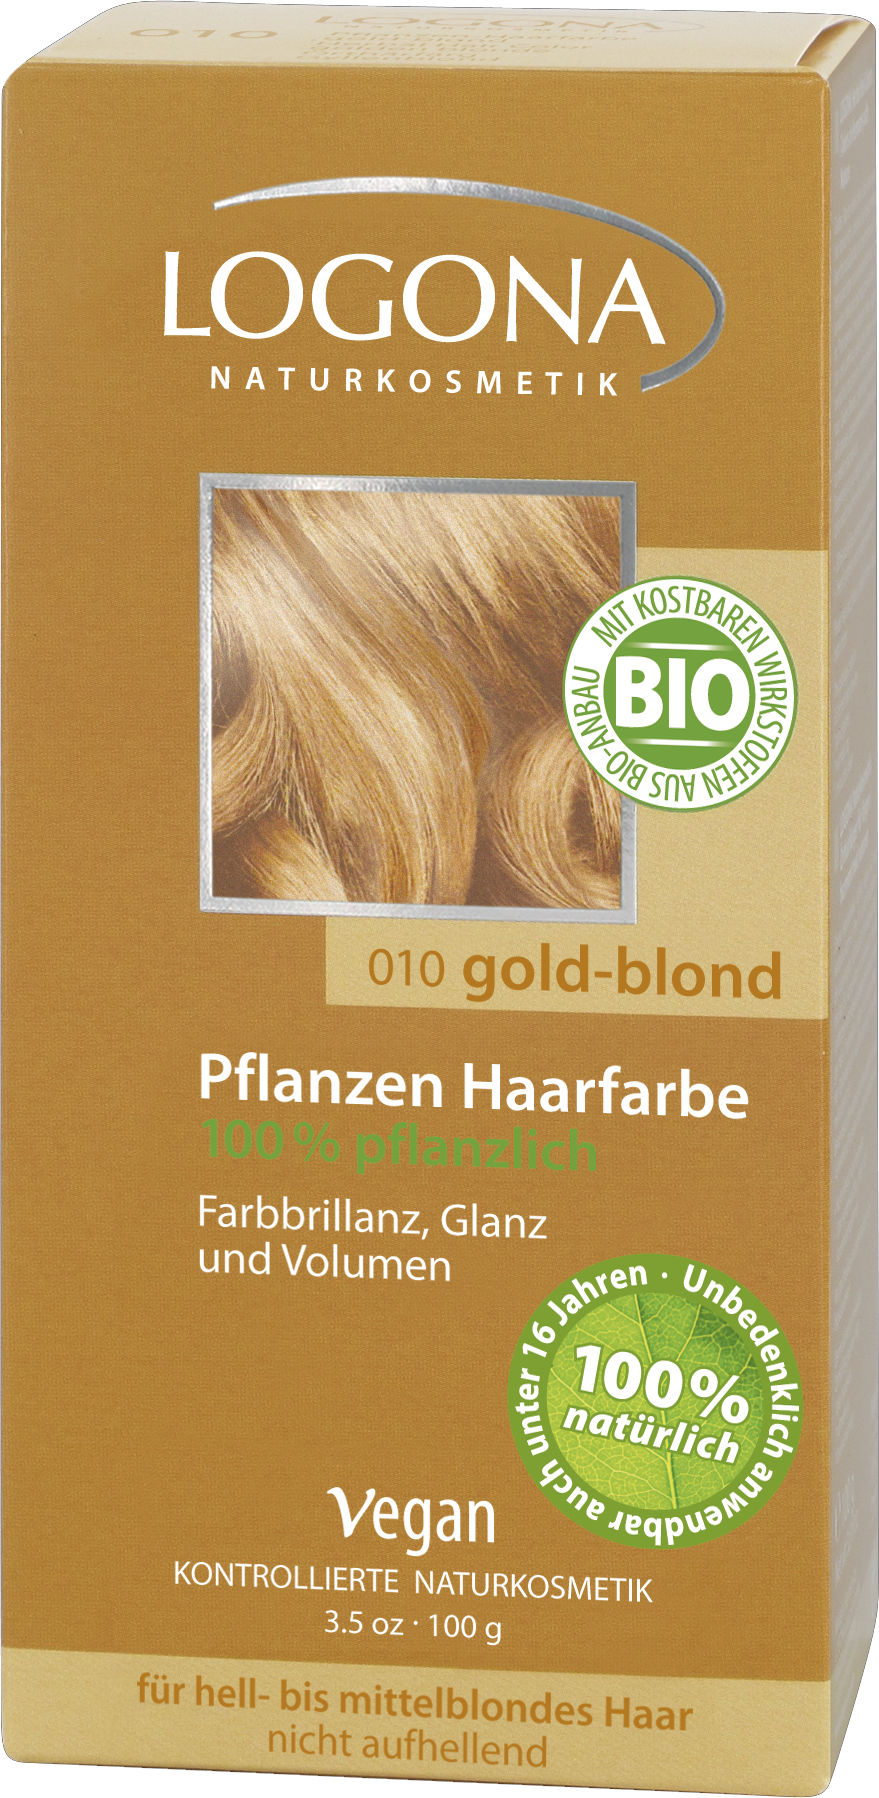 Pulver | Pflanzen-Haarfarbe Goldblond Pflegende Naturkosmetik LOGONA